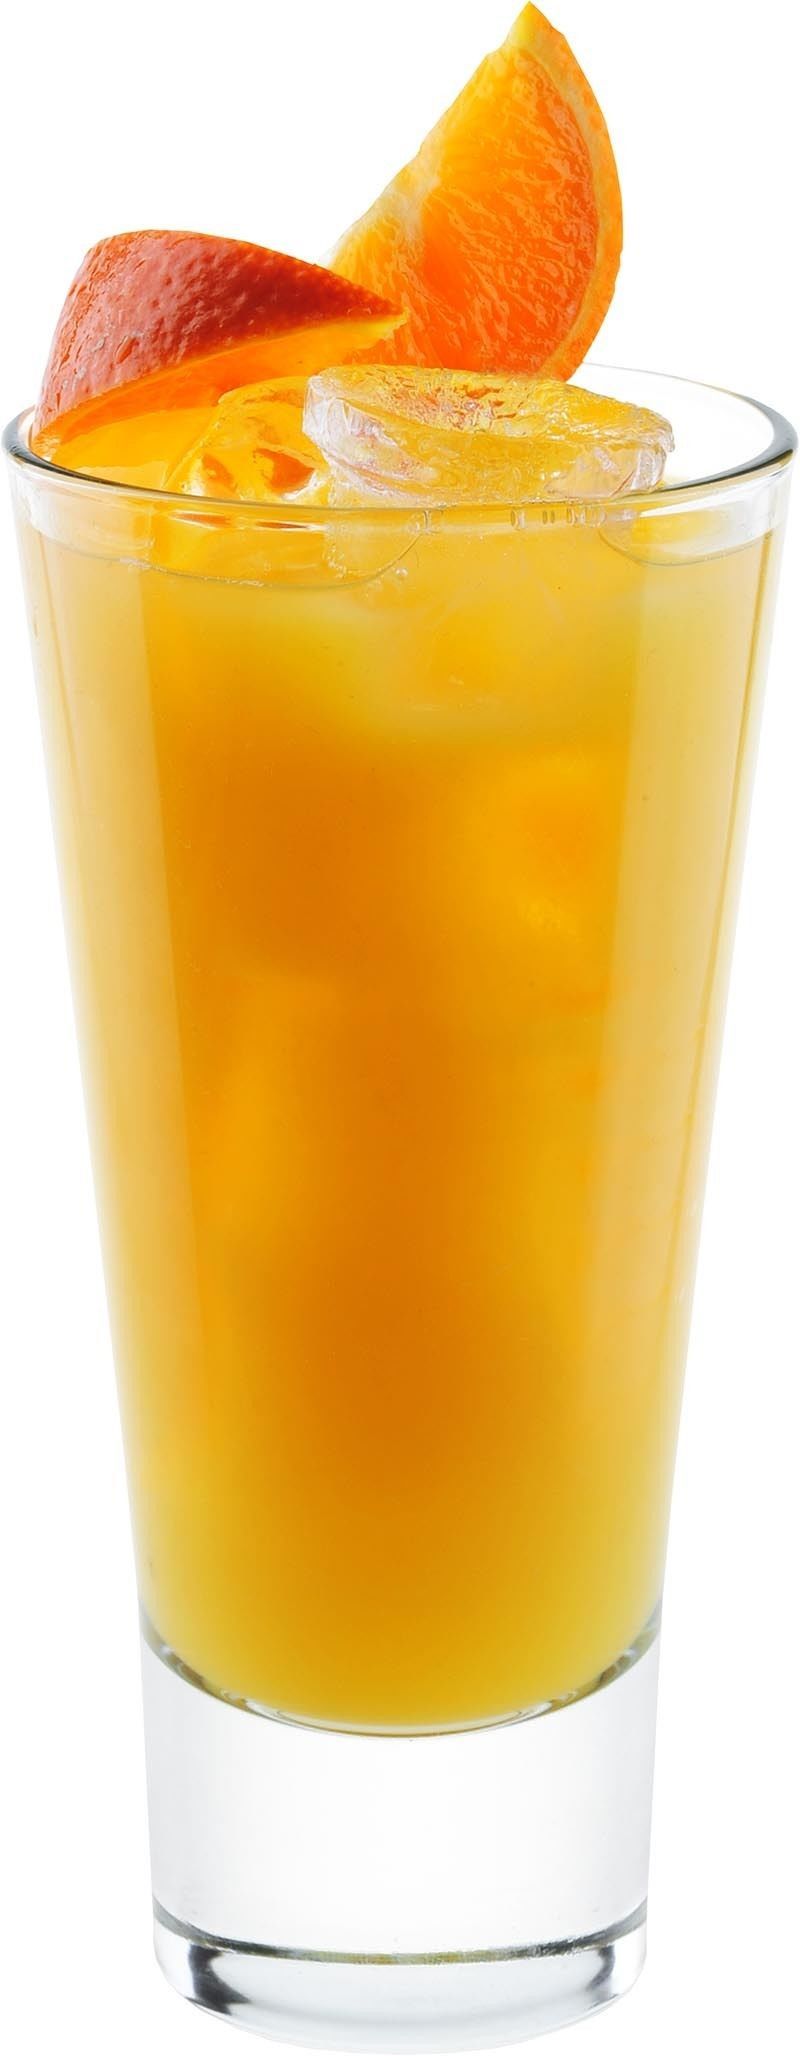 Comment préparer le cocktail Vodka mandarine